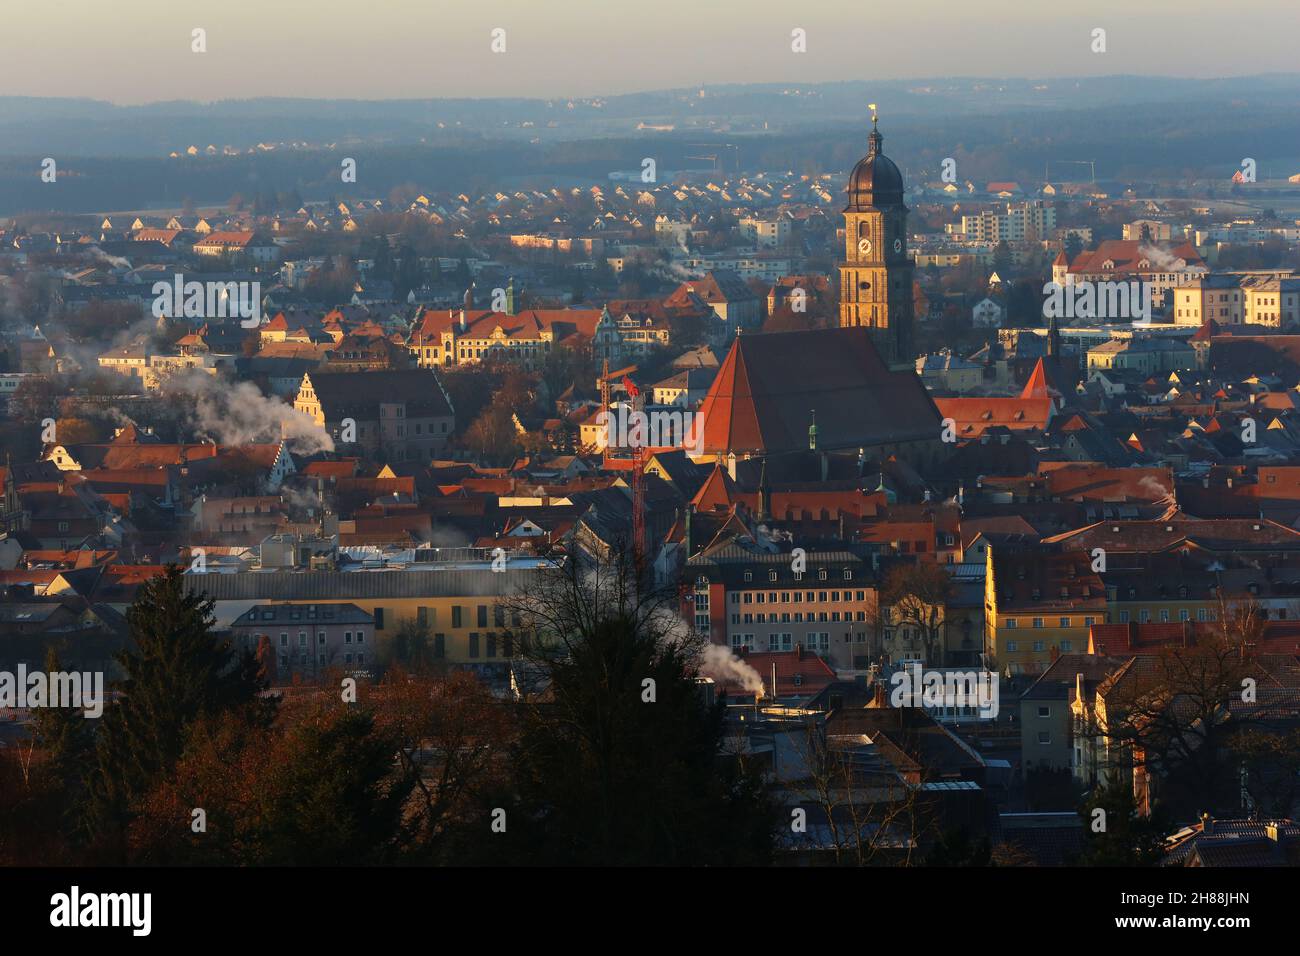 Amberg, Bayerm.Blick von Oberpfalz von Oberpfalz auf das mittelalterliche Zentrum Ambergs mit Altstadt und Kirche St. Martin. Banque D'Images